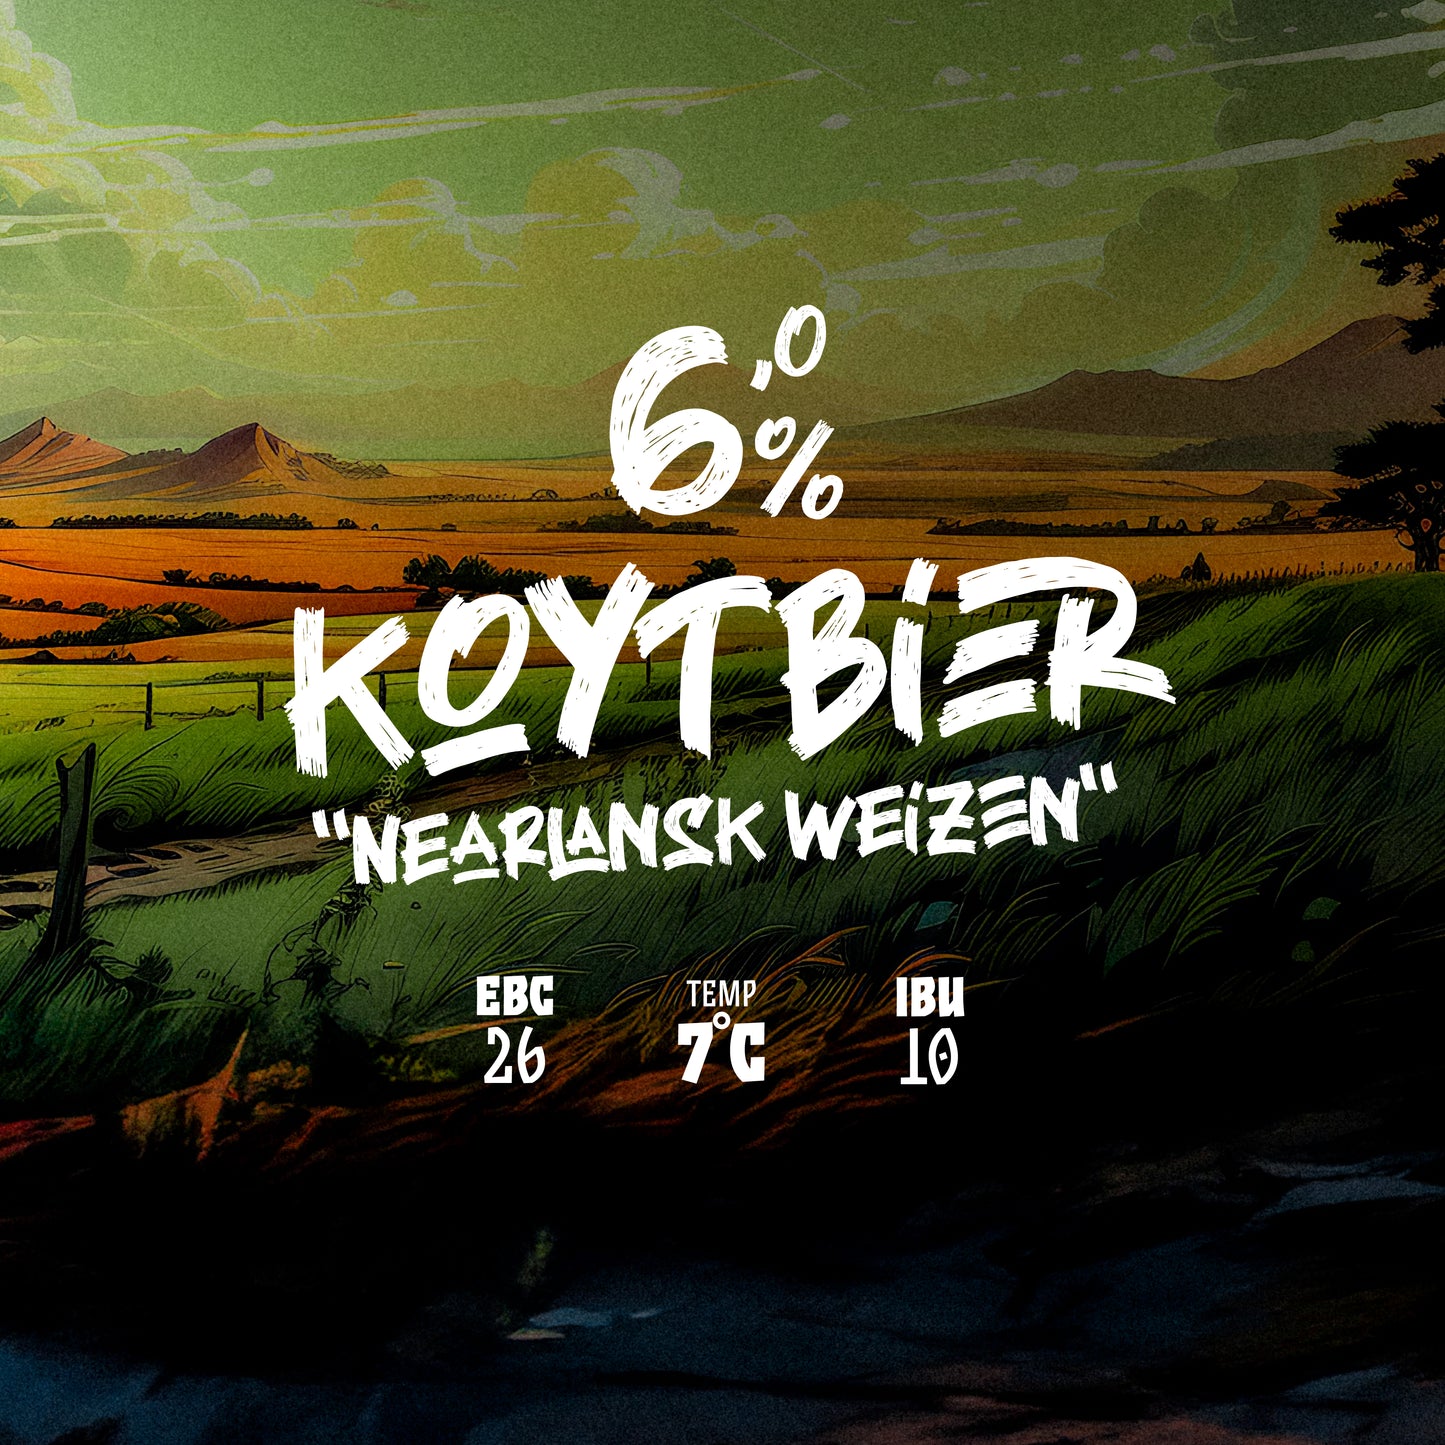 Stypel Dyksken 6% | "Nearlansk Weizen" Koytbier